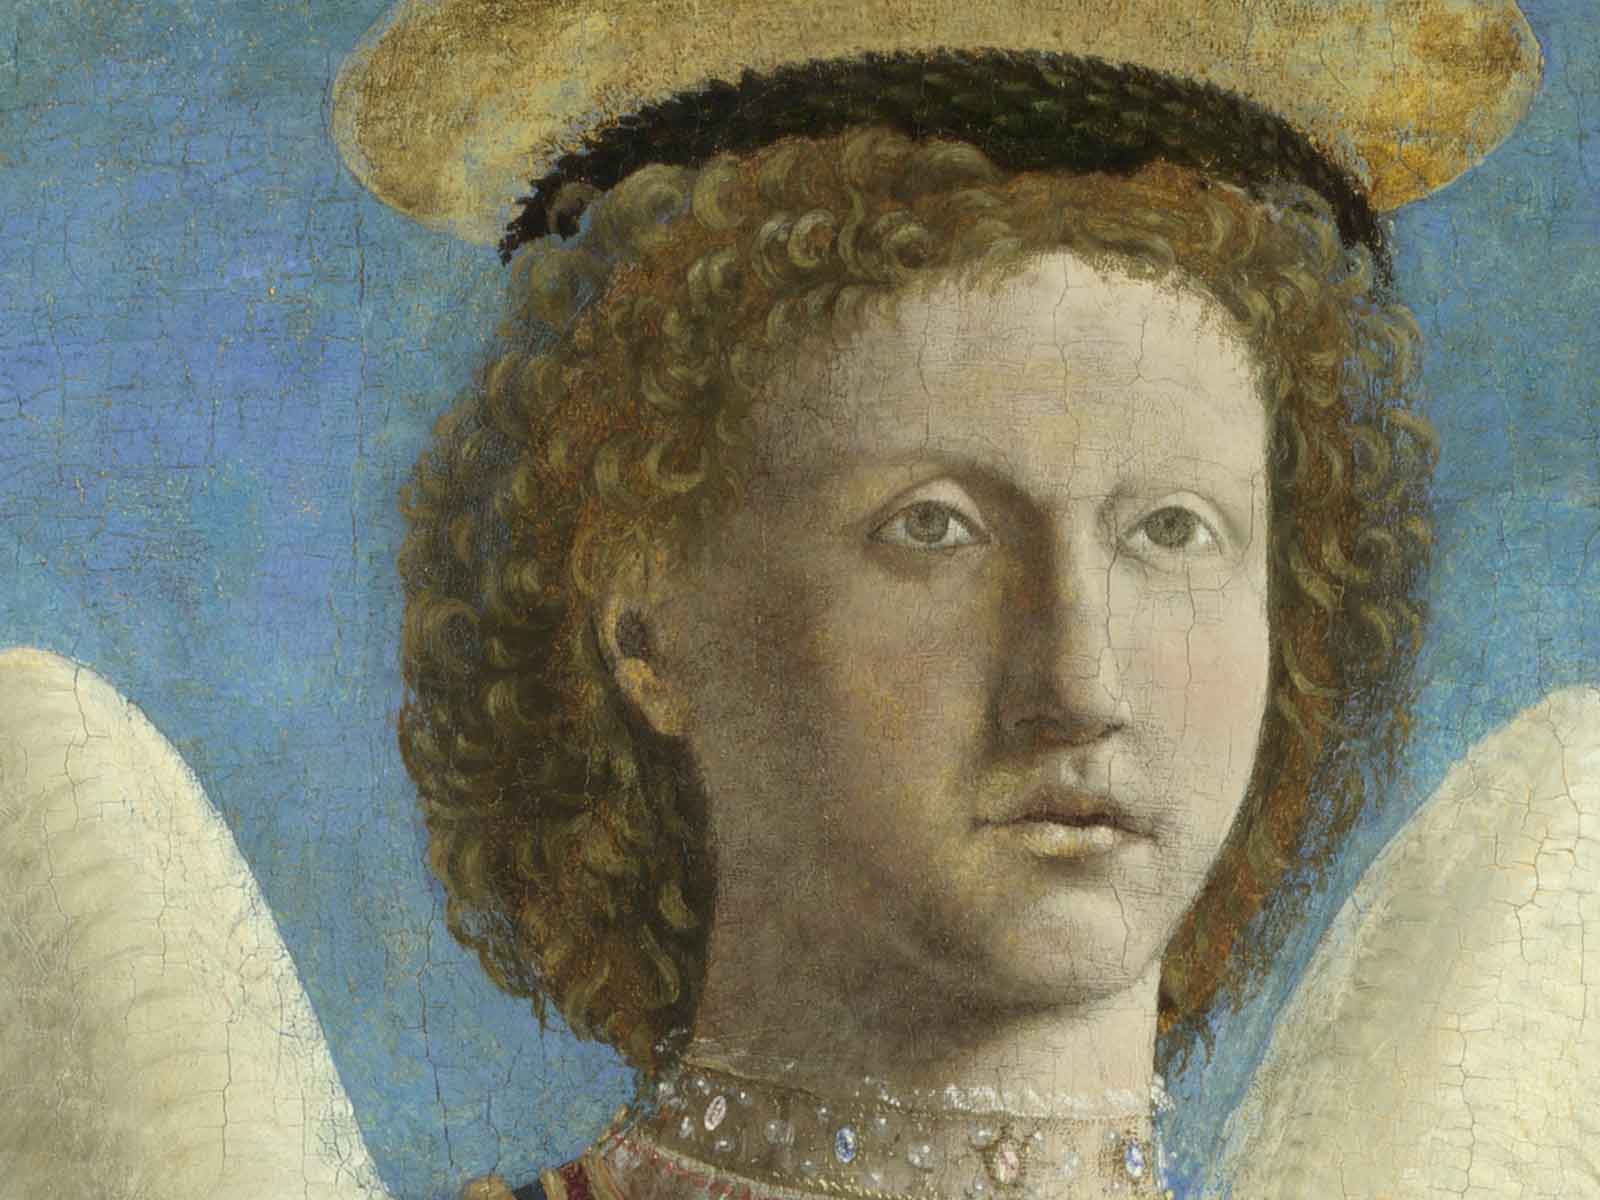 Dettaglio di San michele arcangelo di Piero della Francesca 